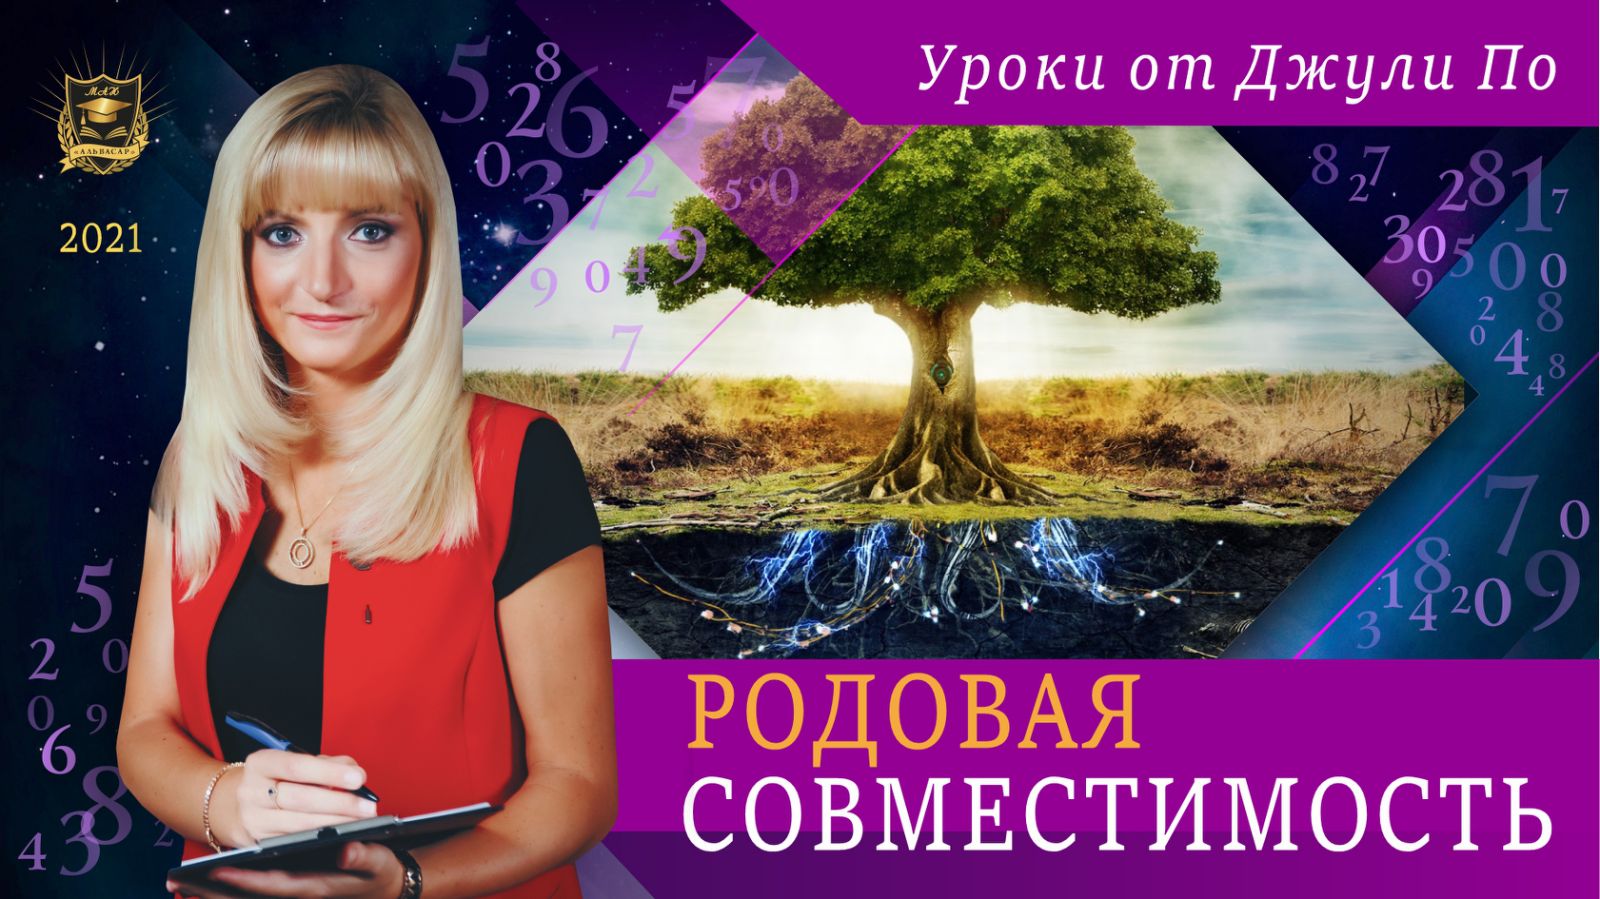 rodovaya sovmestimost Семинары, книги, программы, обучение по авторским методикам Айрэн По и Джули По